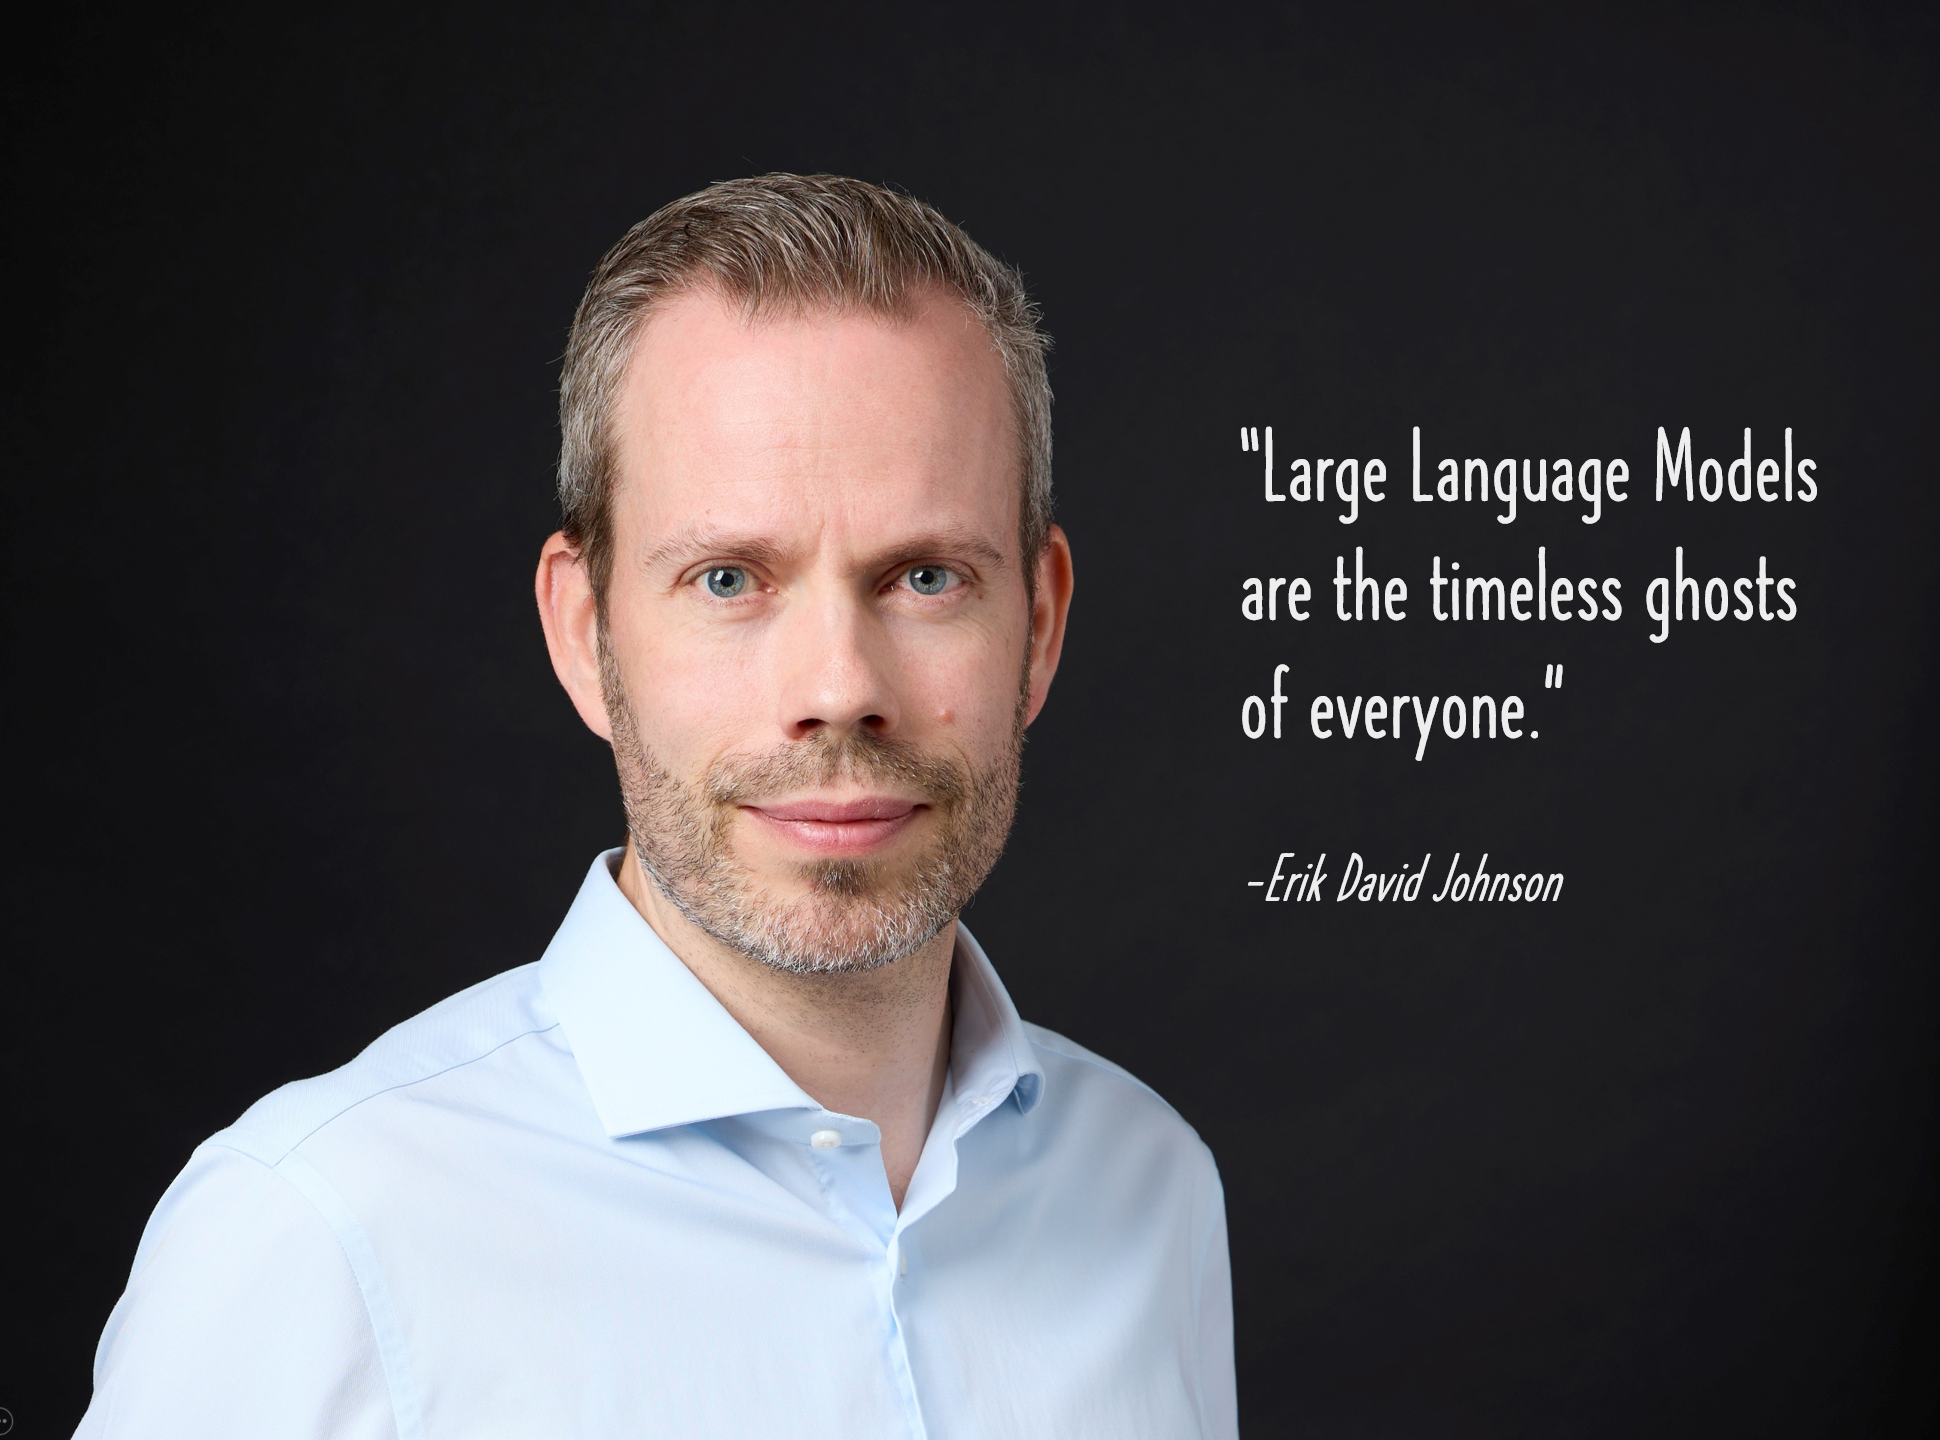 On Large Language Models